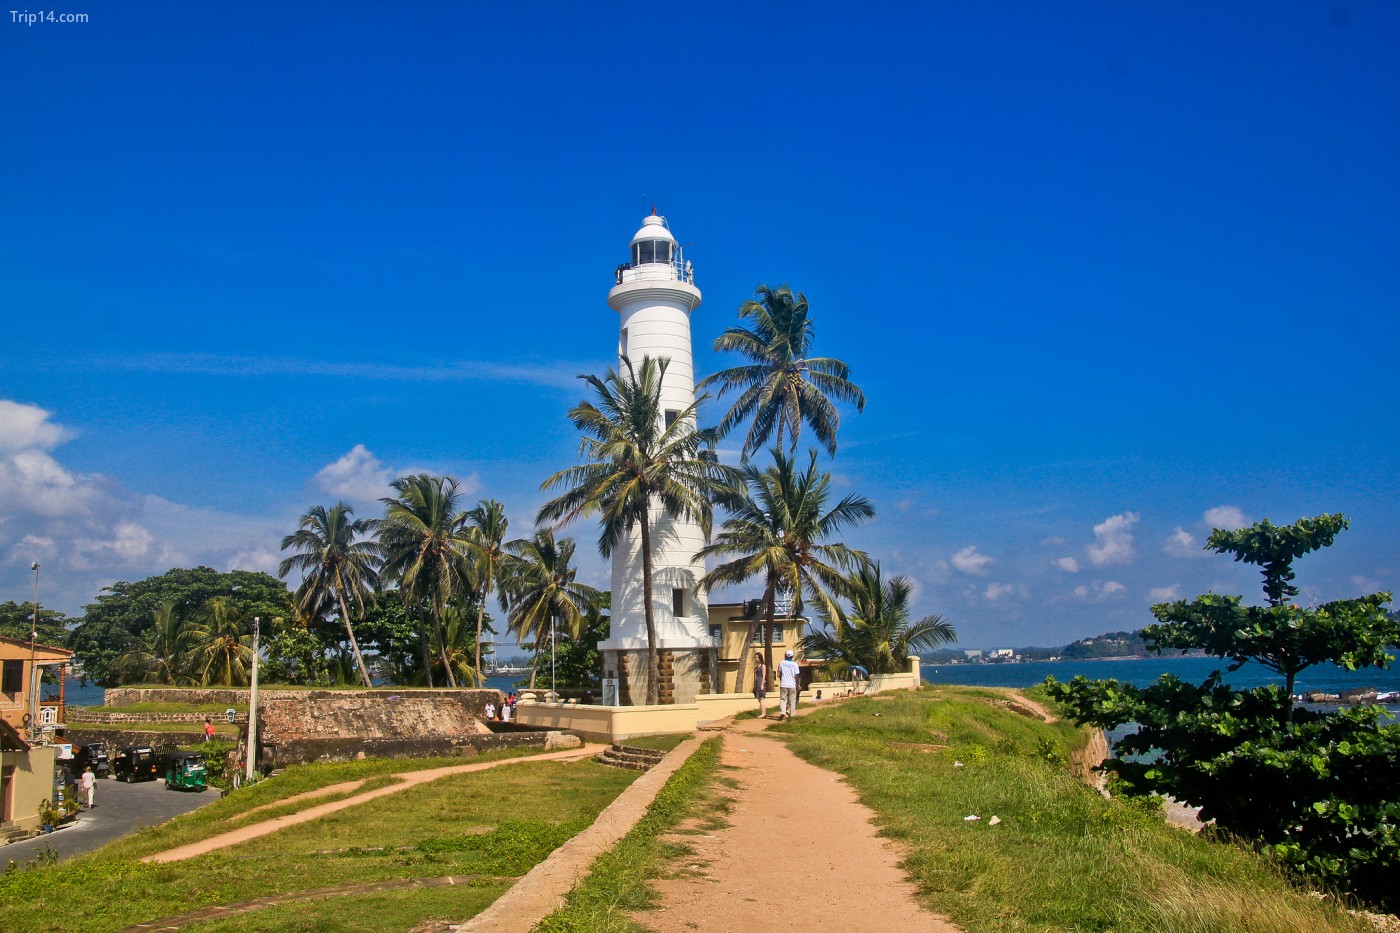 Galle, Sri Lanka | © Patty Ho / Flickr - Trip14.com